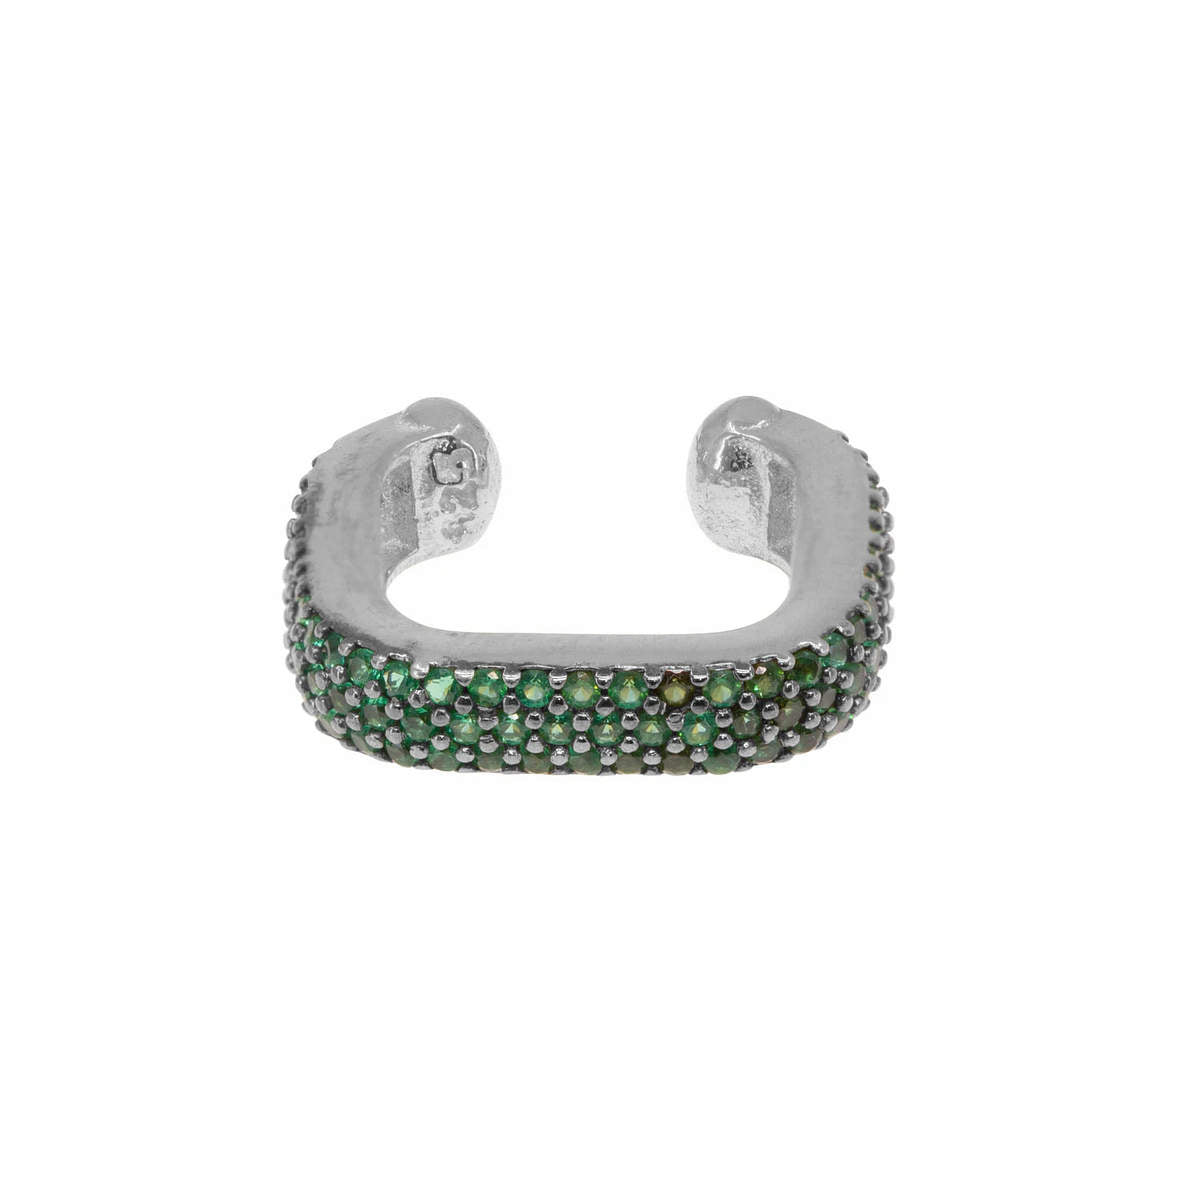 Fascinator Ear Cuff in Emerald